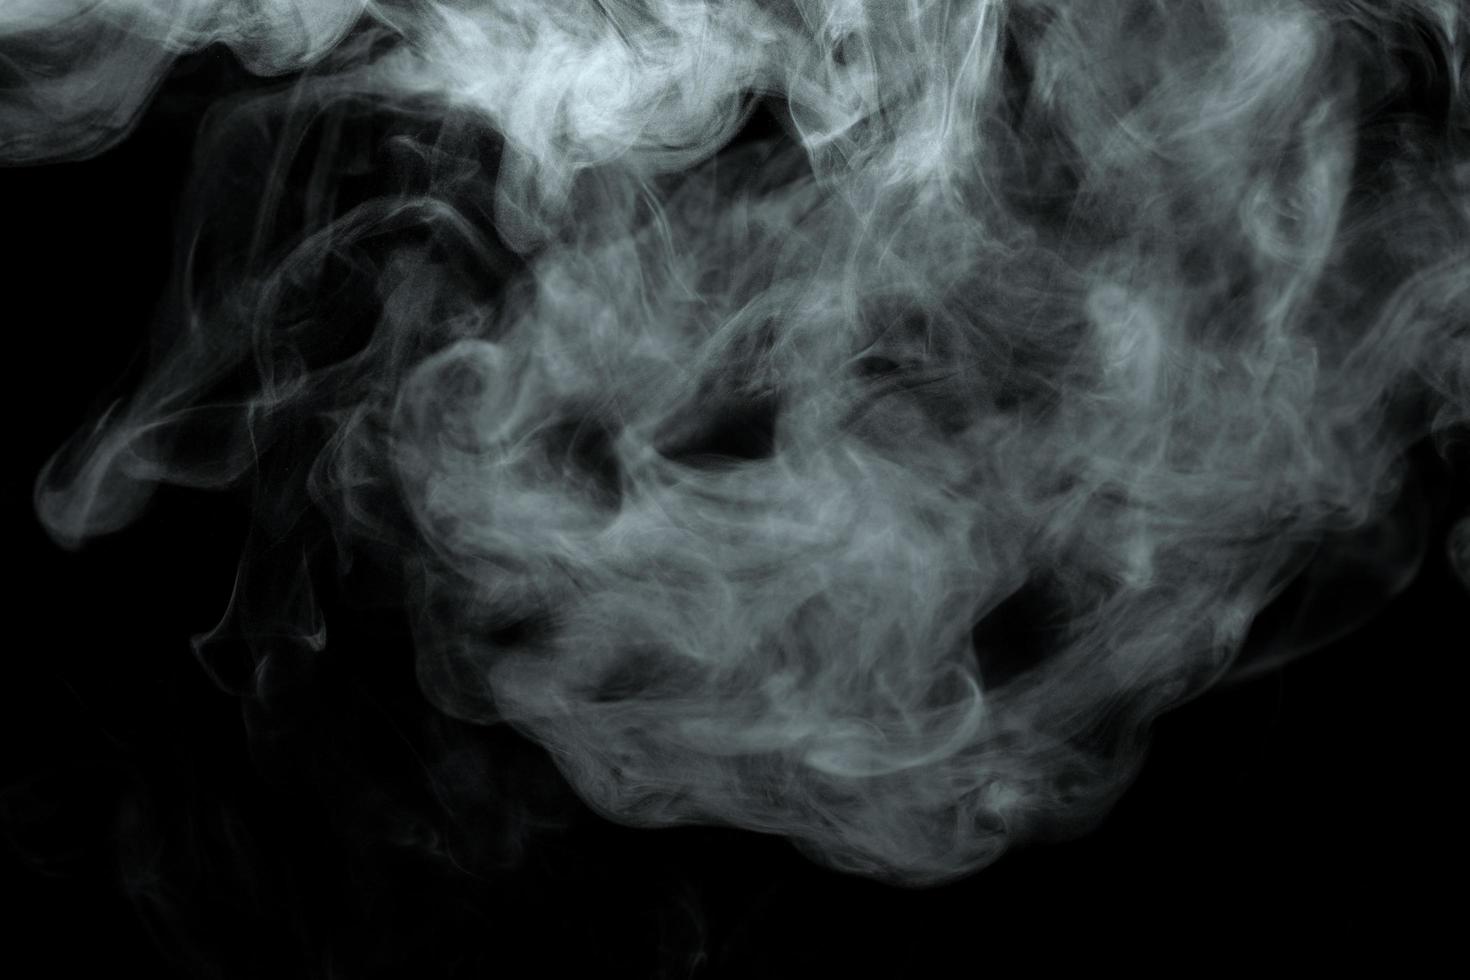 abstrakter pulver- oder raucheffekt lokalisiert auf schwarzem hintergrund foto